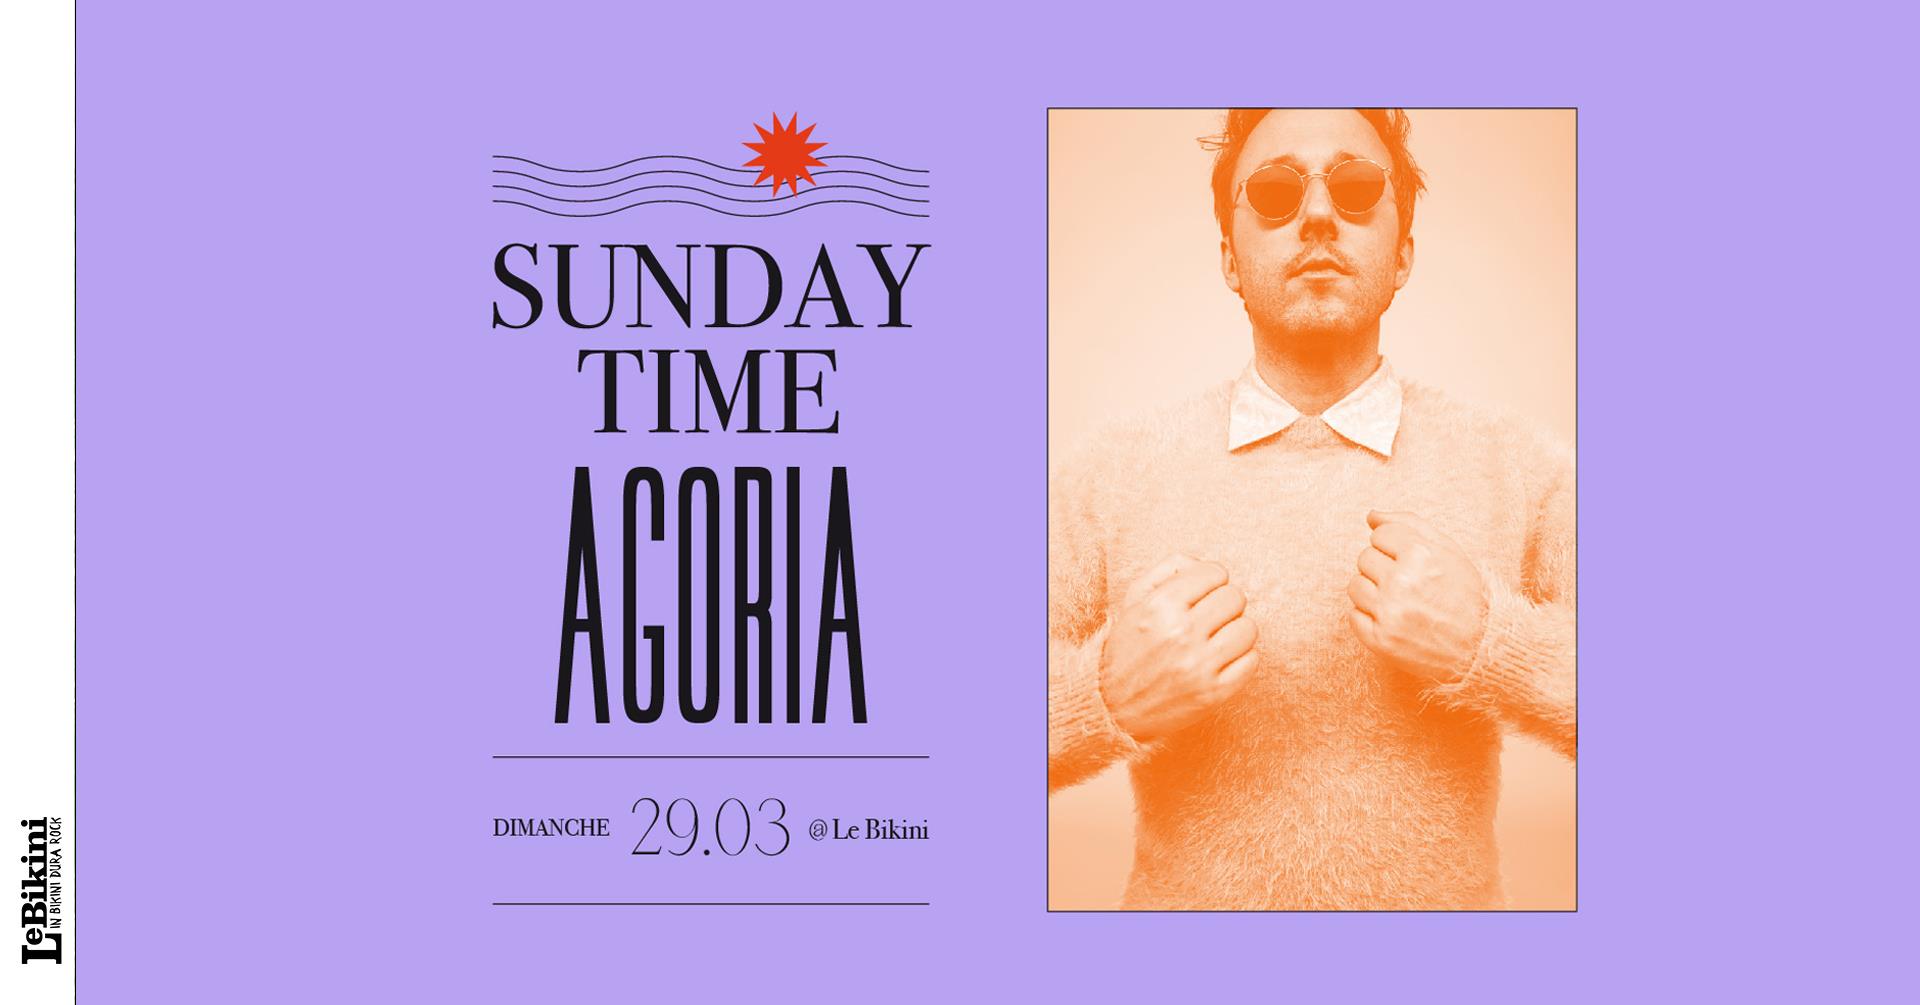 Toulouse : Agoria en guest du 2e volet du Sunday Time au Bikini, le dimanche 29 mars 2020